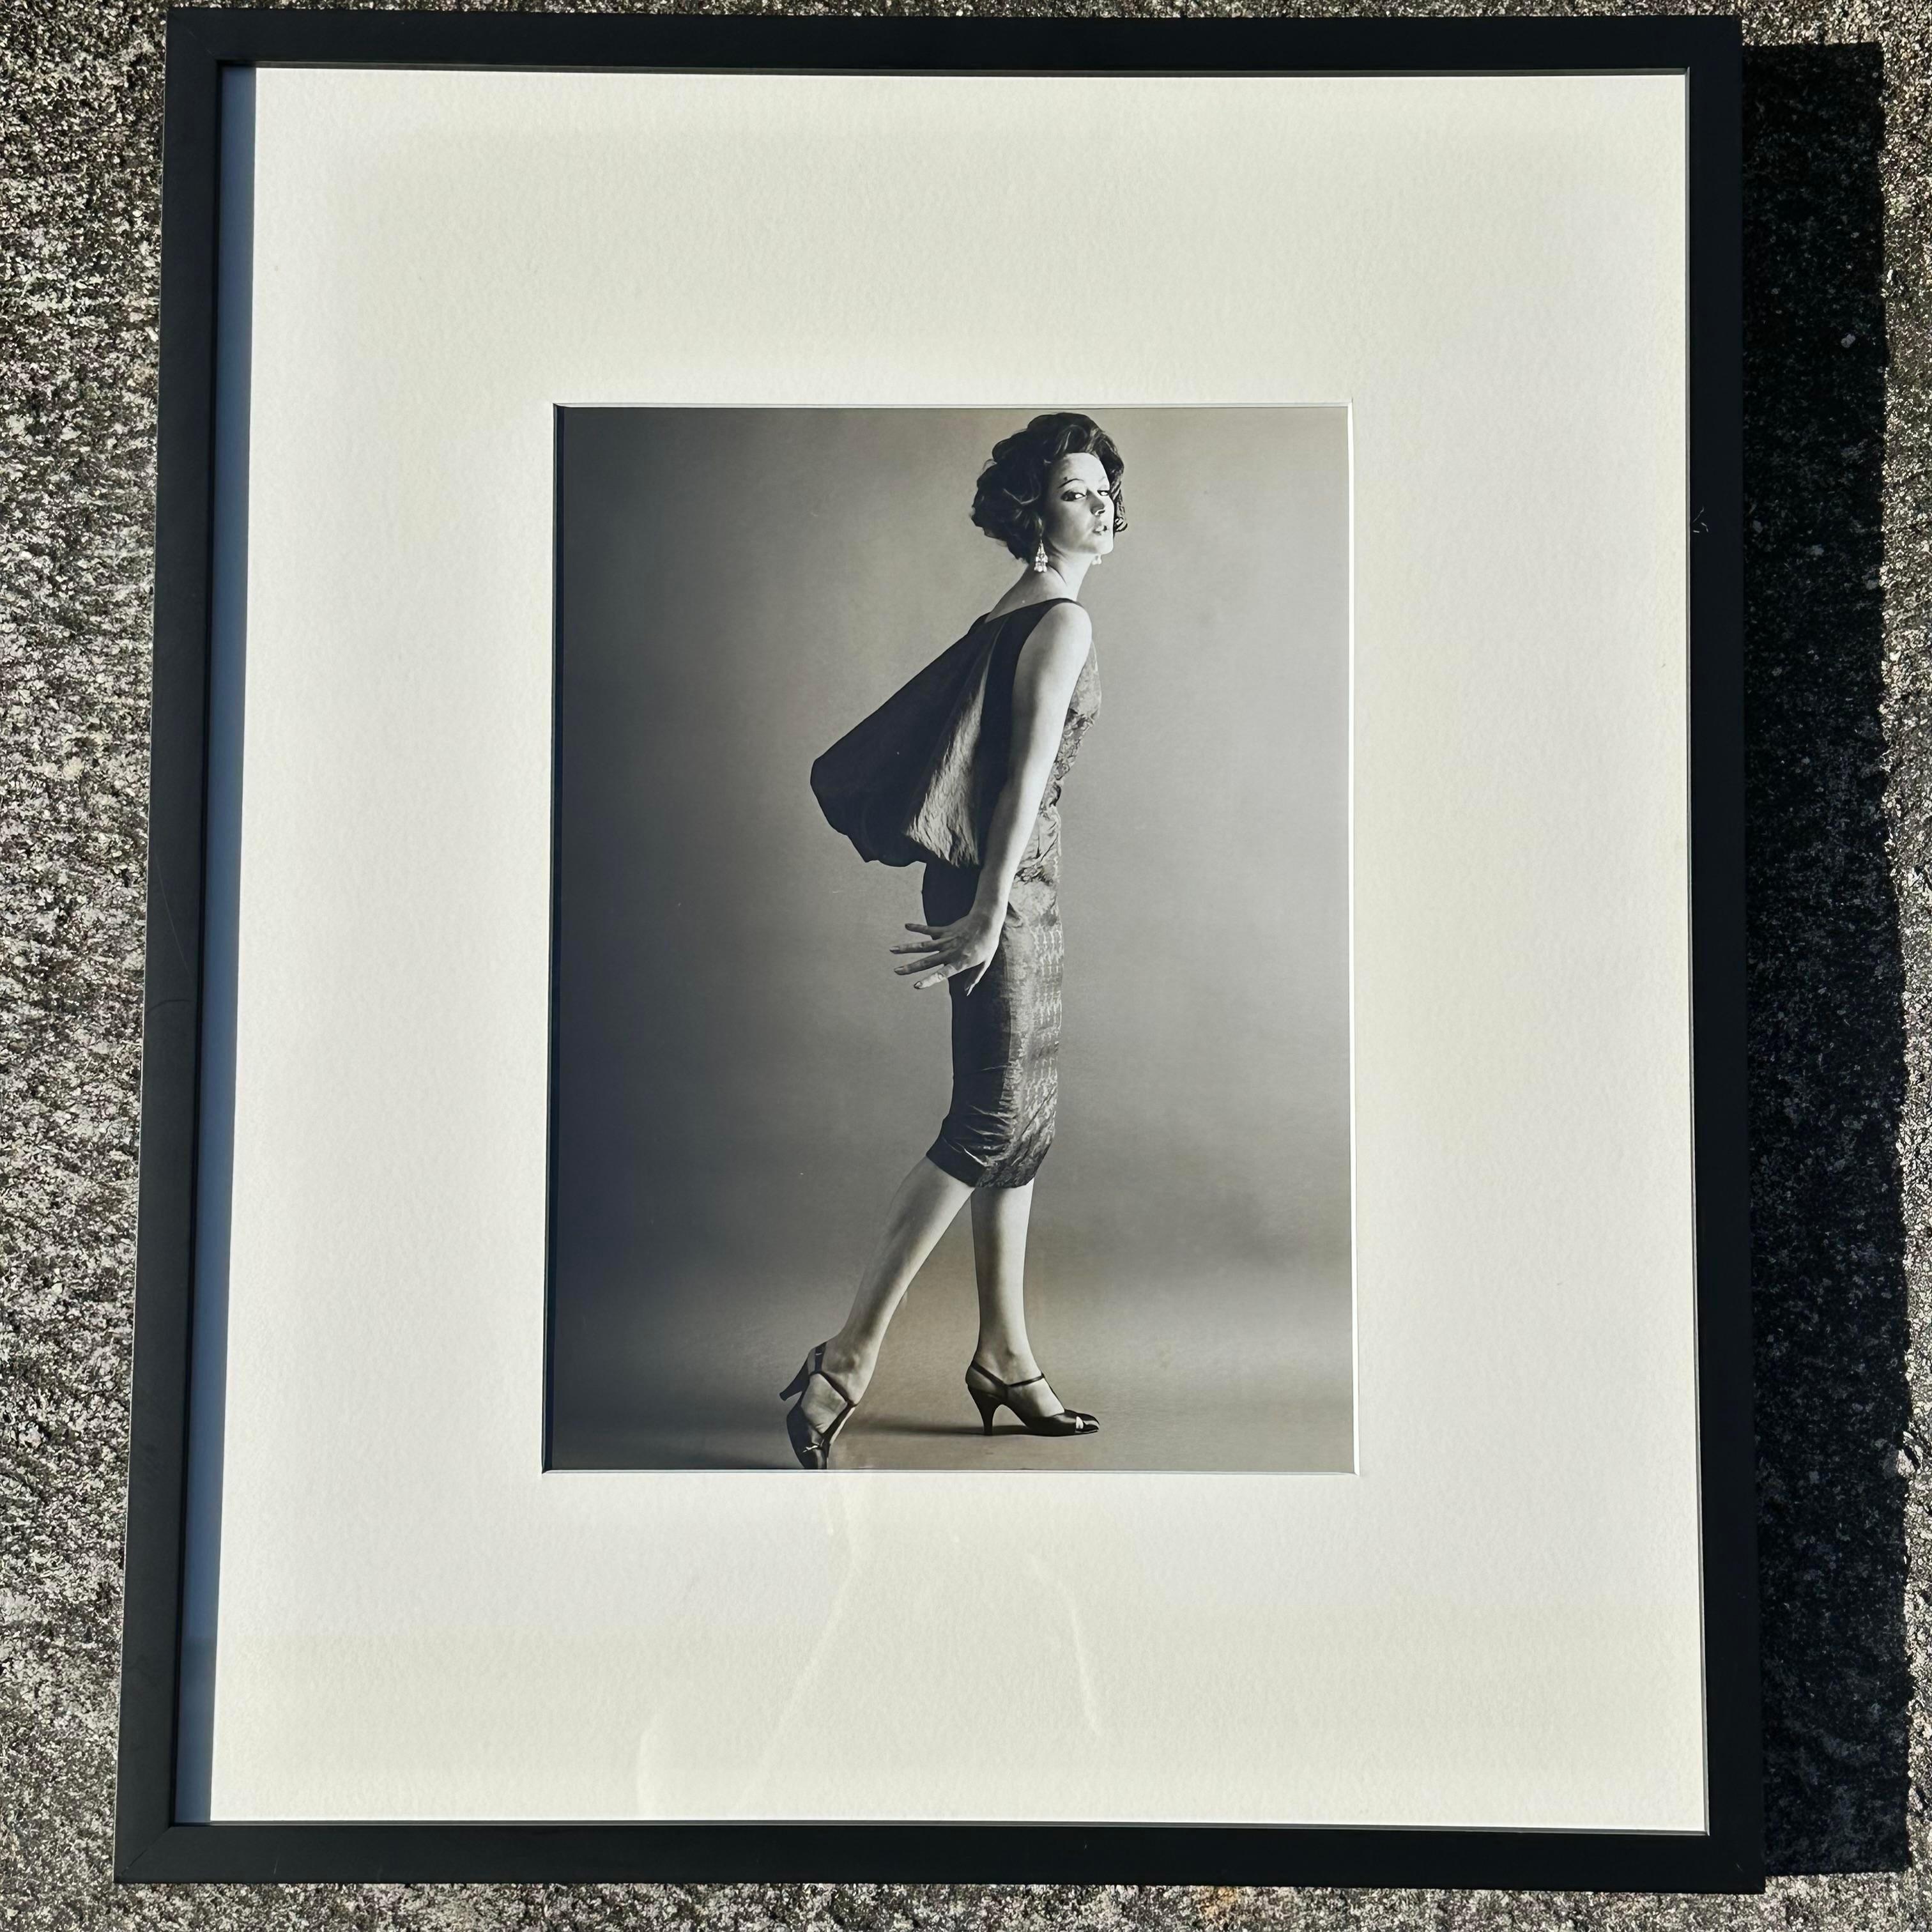 Ein wunderschönes Vintage-Foto von 1950, das eine Frau bei einem Mode-Fotoshooting zeigt. Das Bild wird von einem sehr passenden schwarzen Rahmen eingerahmt, der das Bild stilvoll macht. Es sieht allein oder im Set großartig aus. Erworben in einem